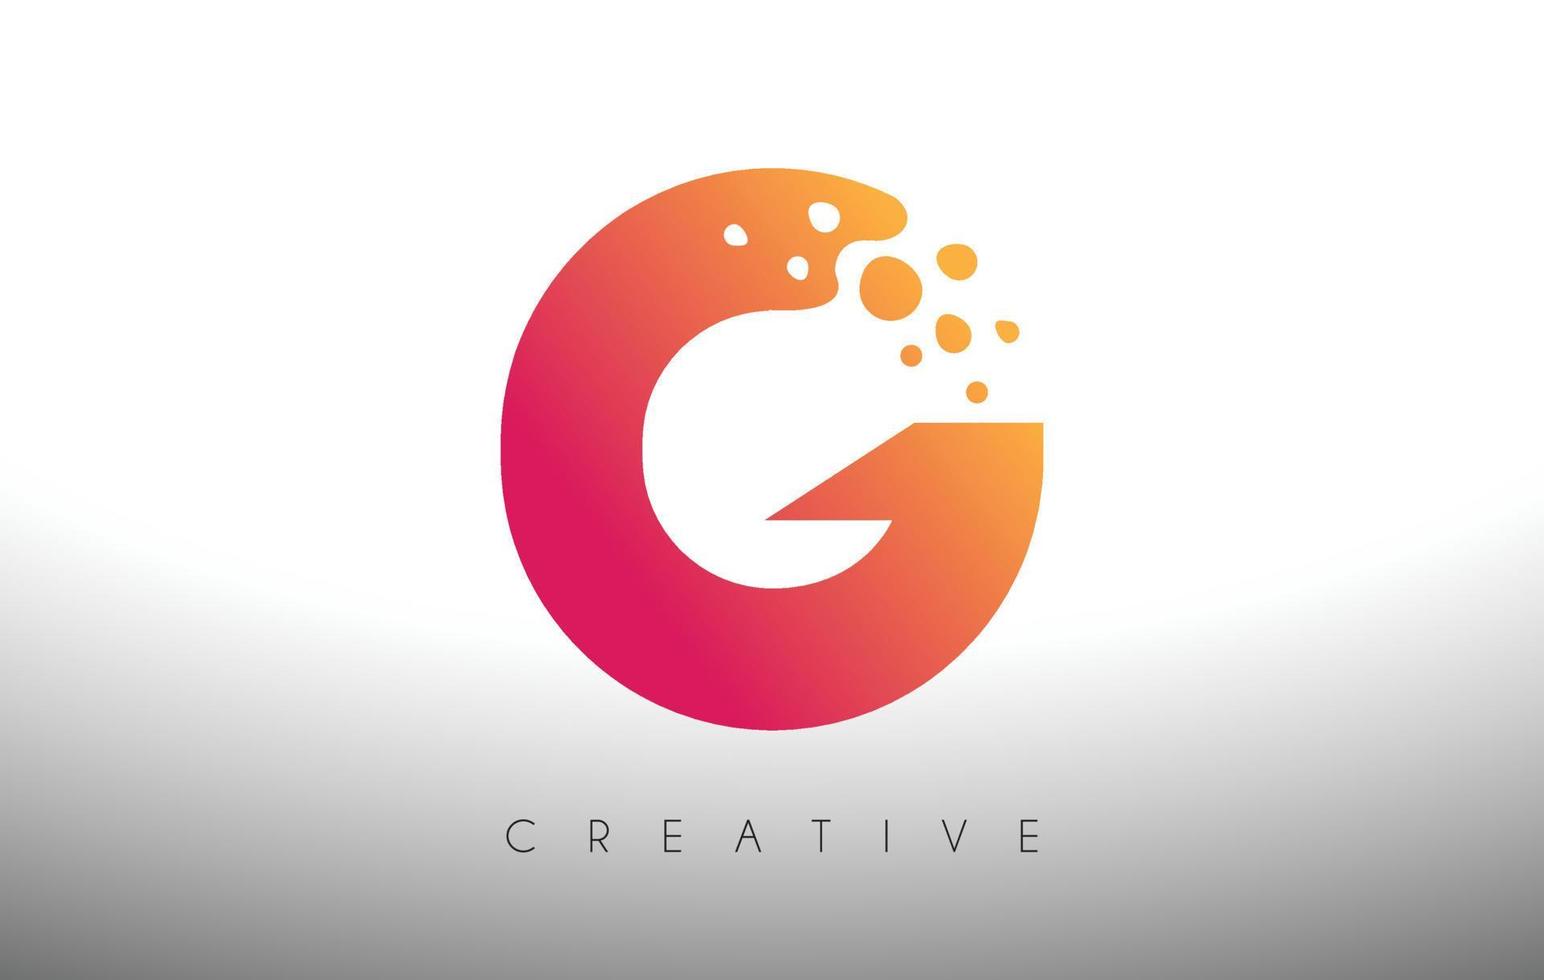 diseño de logotipo de letra g puntos con burbuja artística creativa cortada en vector de colores púrpura